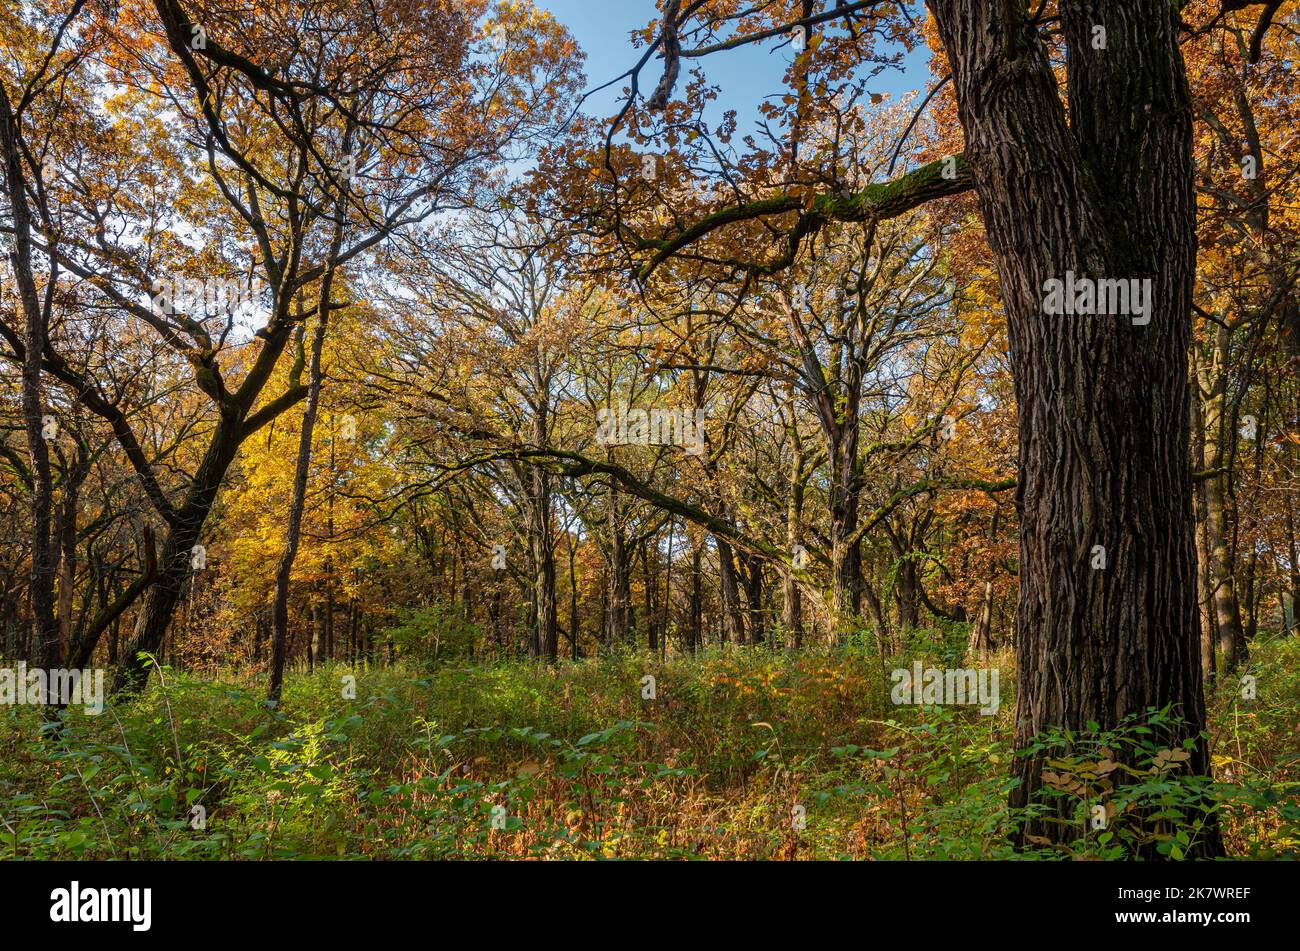 Les savanes de chêne dominent le paysage dans certaines parties de la grande réserve de forêt de Waterfall Glen, dans le comté de DuPage, dans l'Illinois Banque D'Images